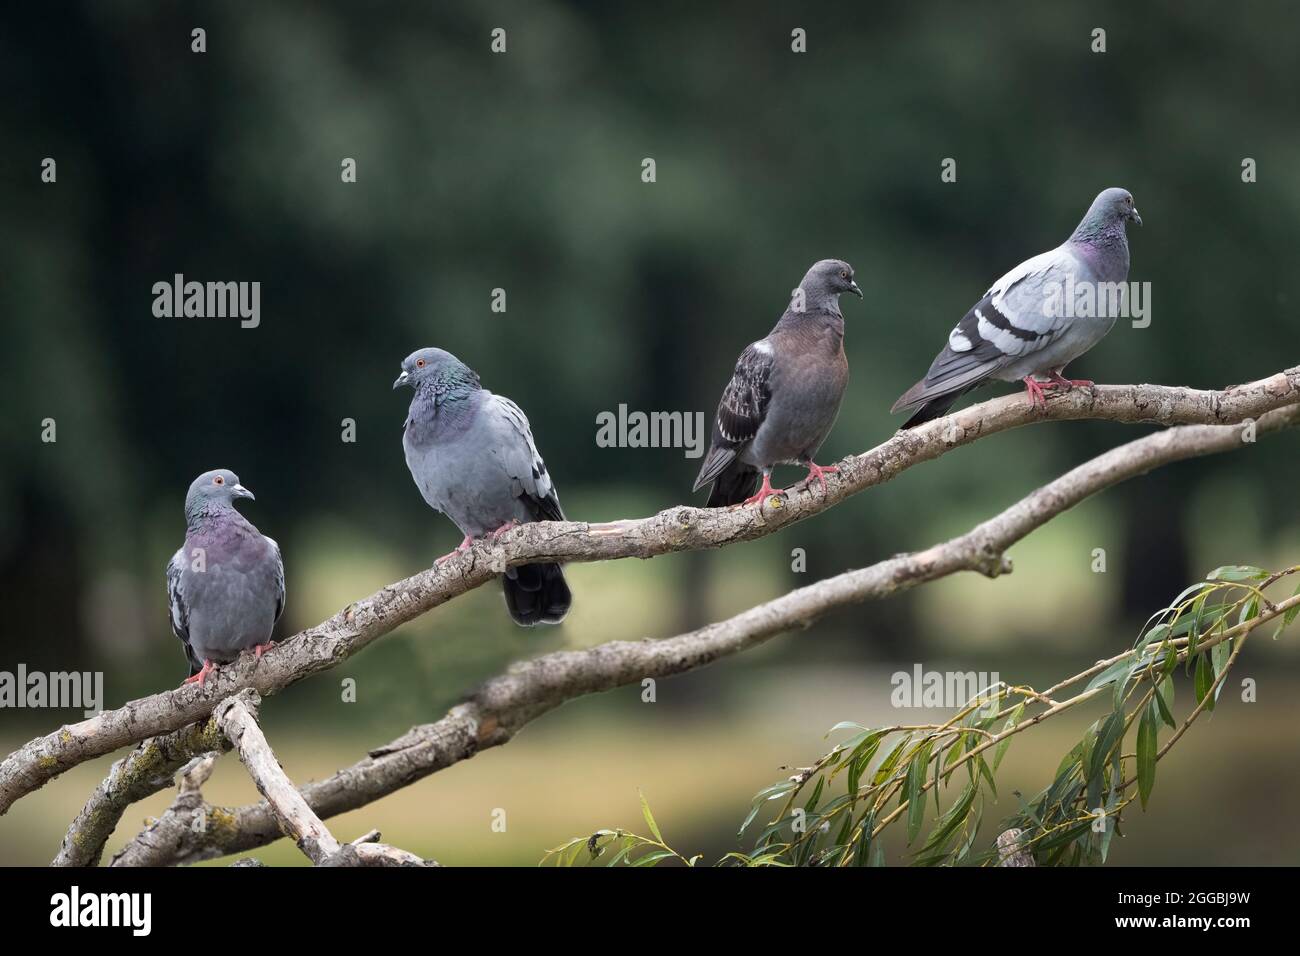 pigeon dérivé du mot latin pipipipio signifiant jeune oiseau qui joue Banque D'Images